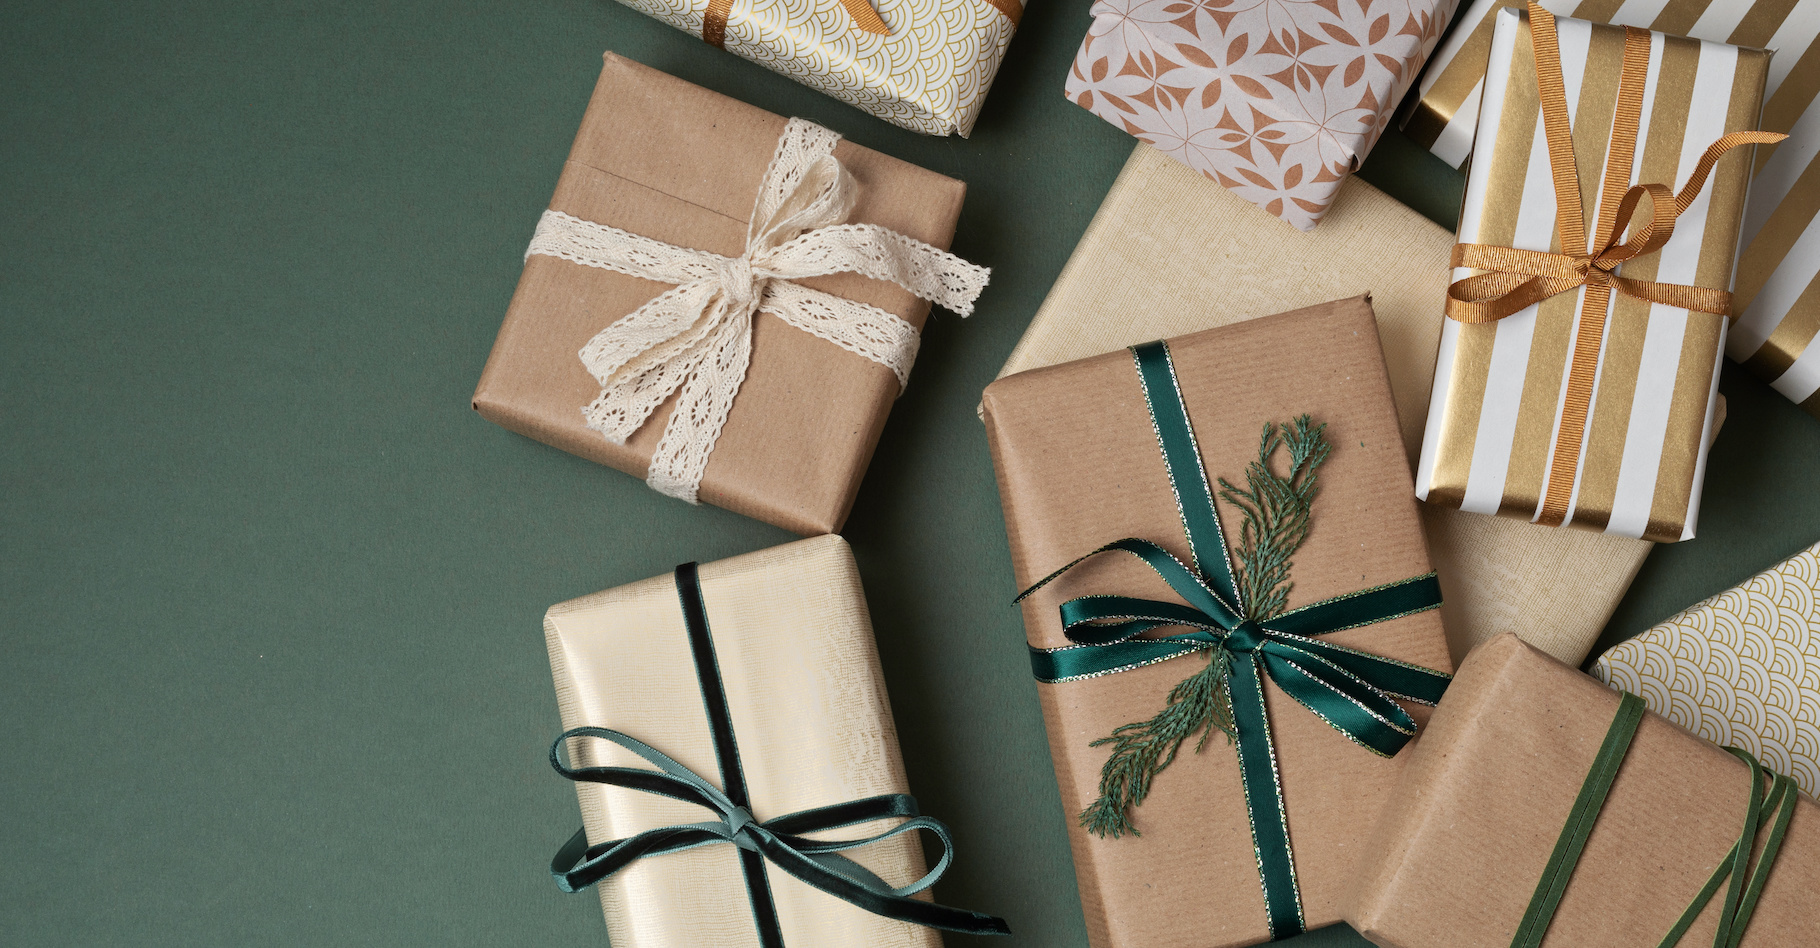 Selon l’étude Greenly publiée récemment, à Noël, ce sont les cadeaux qui coûtent le plus cher en carbone. © netrun78, Adobe Stock